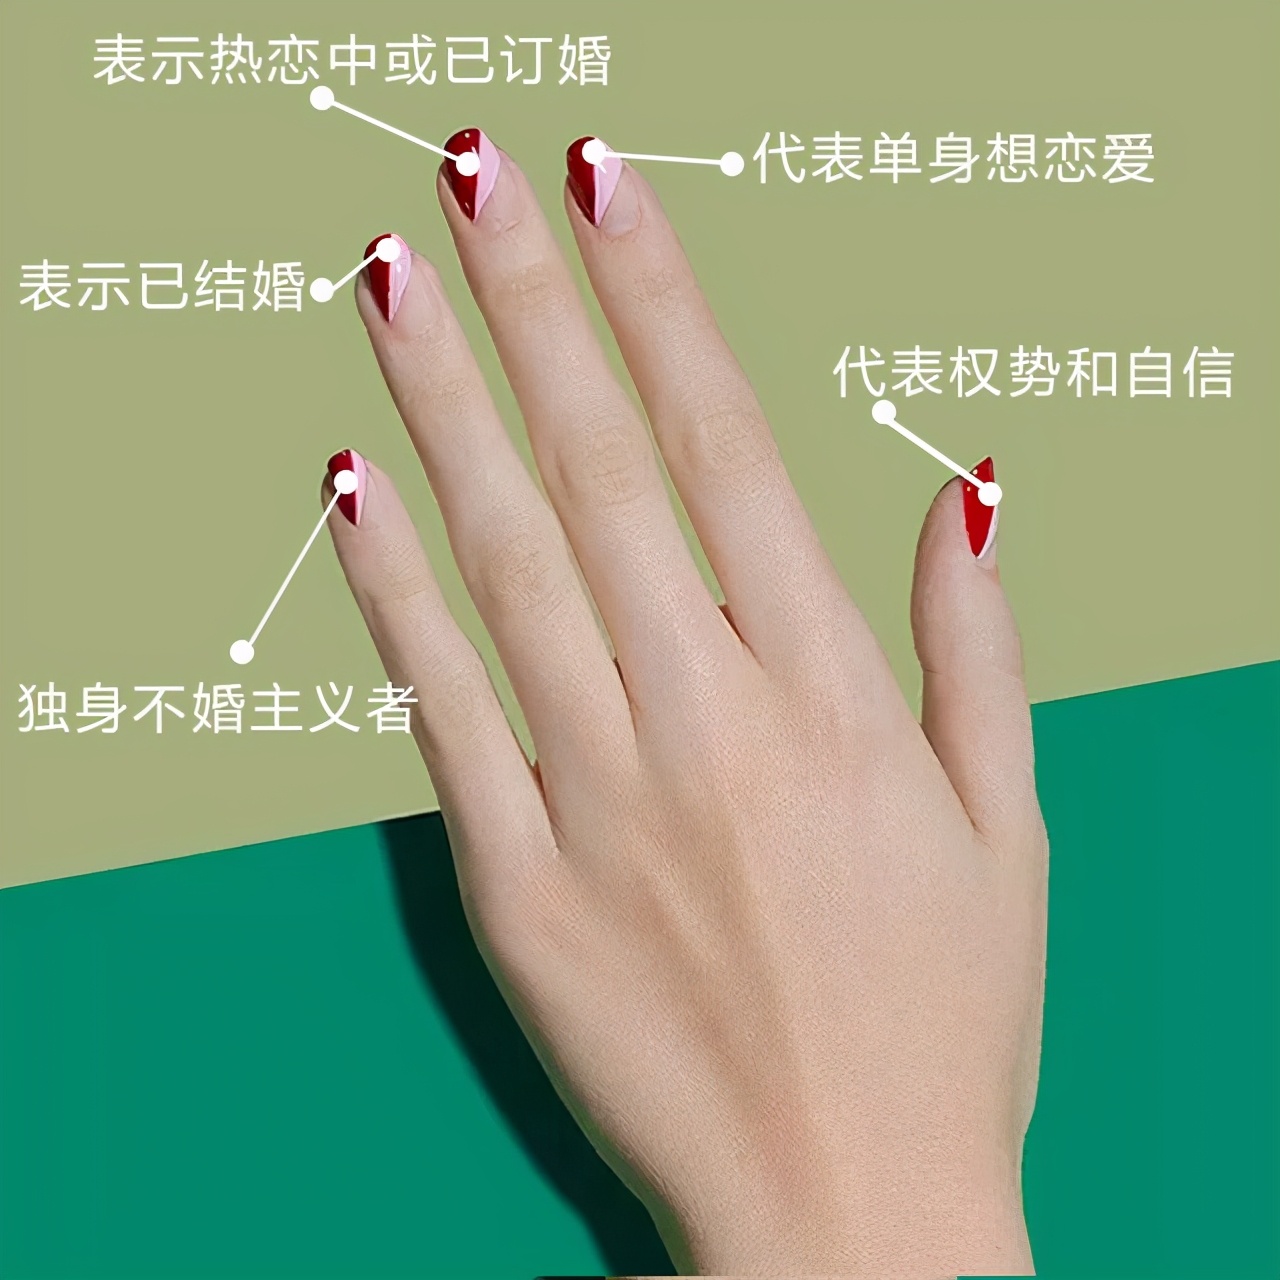 不同手指戴戒指的含义是什么？订婚人士如何戴？